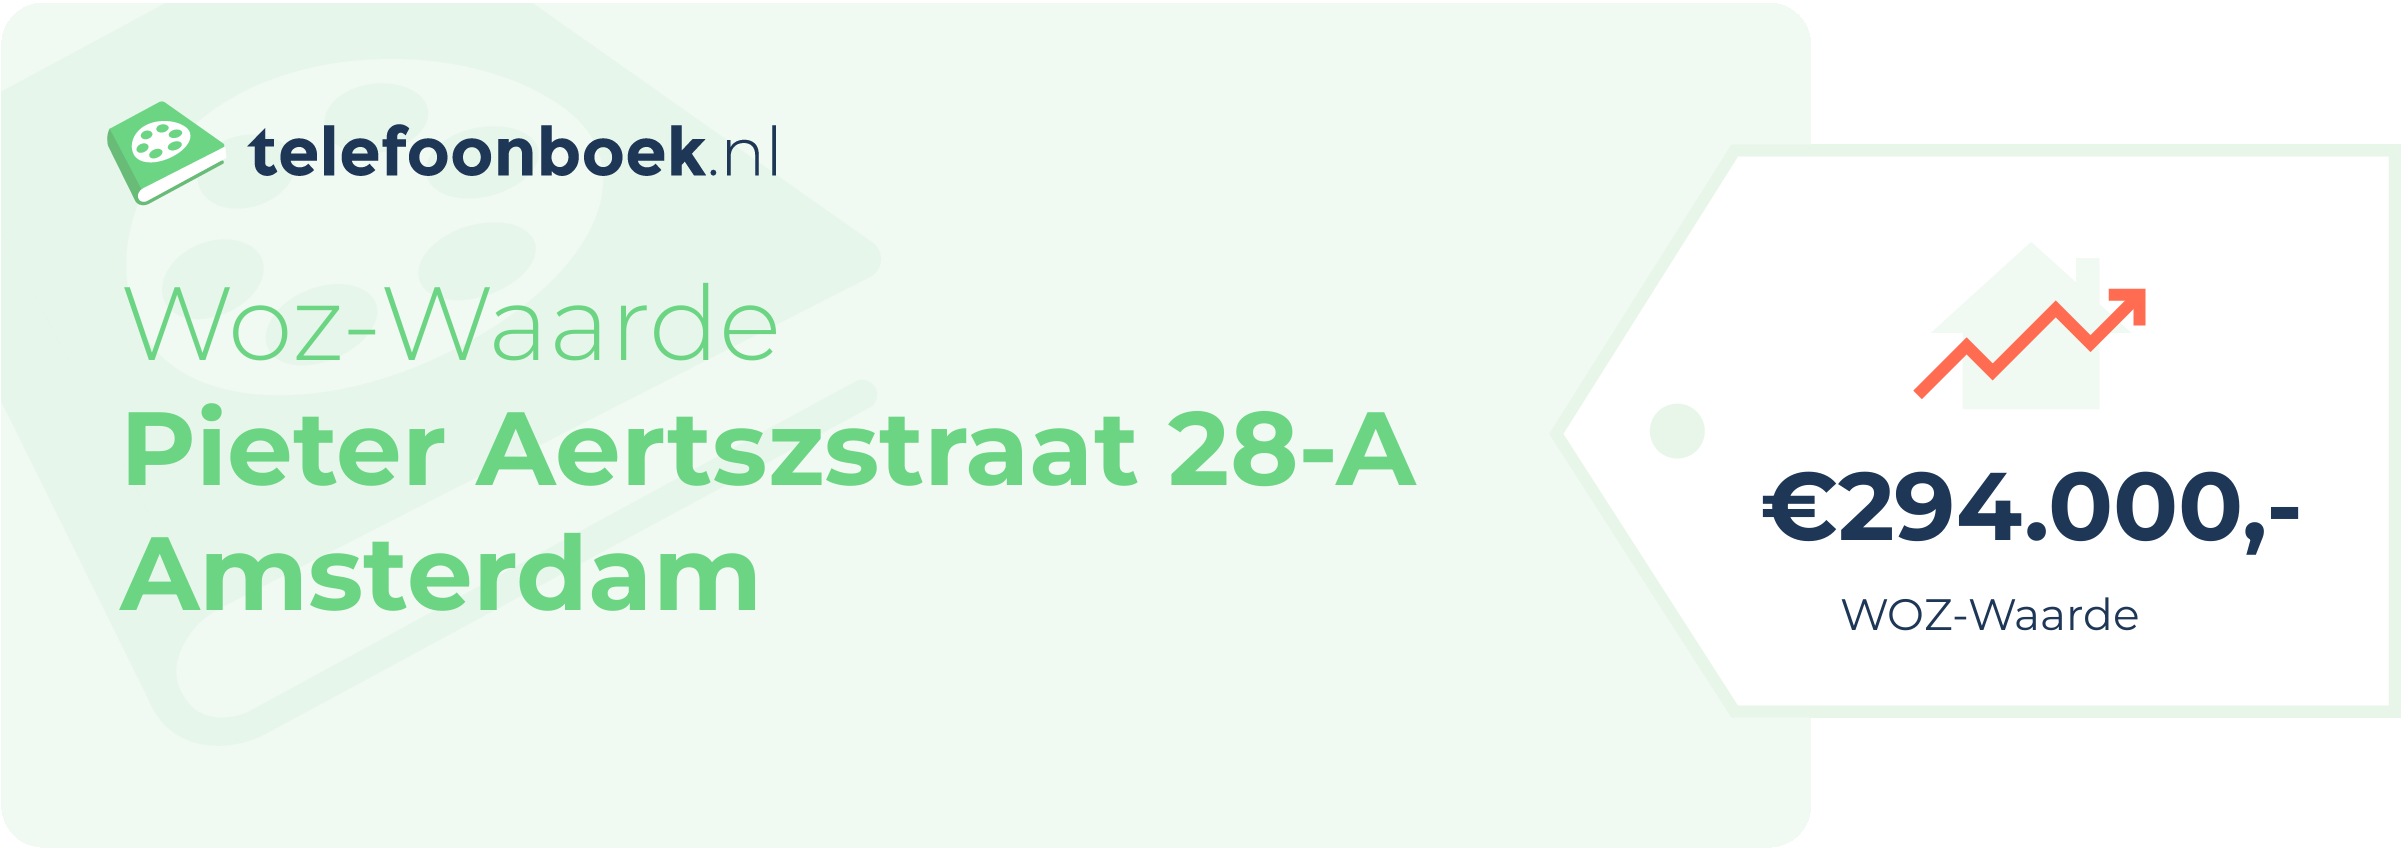 WOZ-waarde Pieter Aertszstraat 28-A Amsterdam